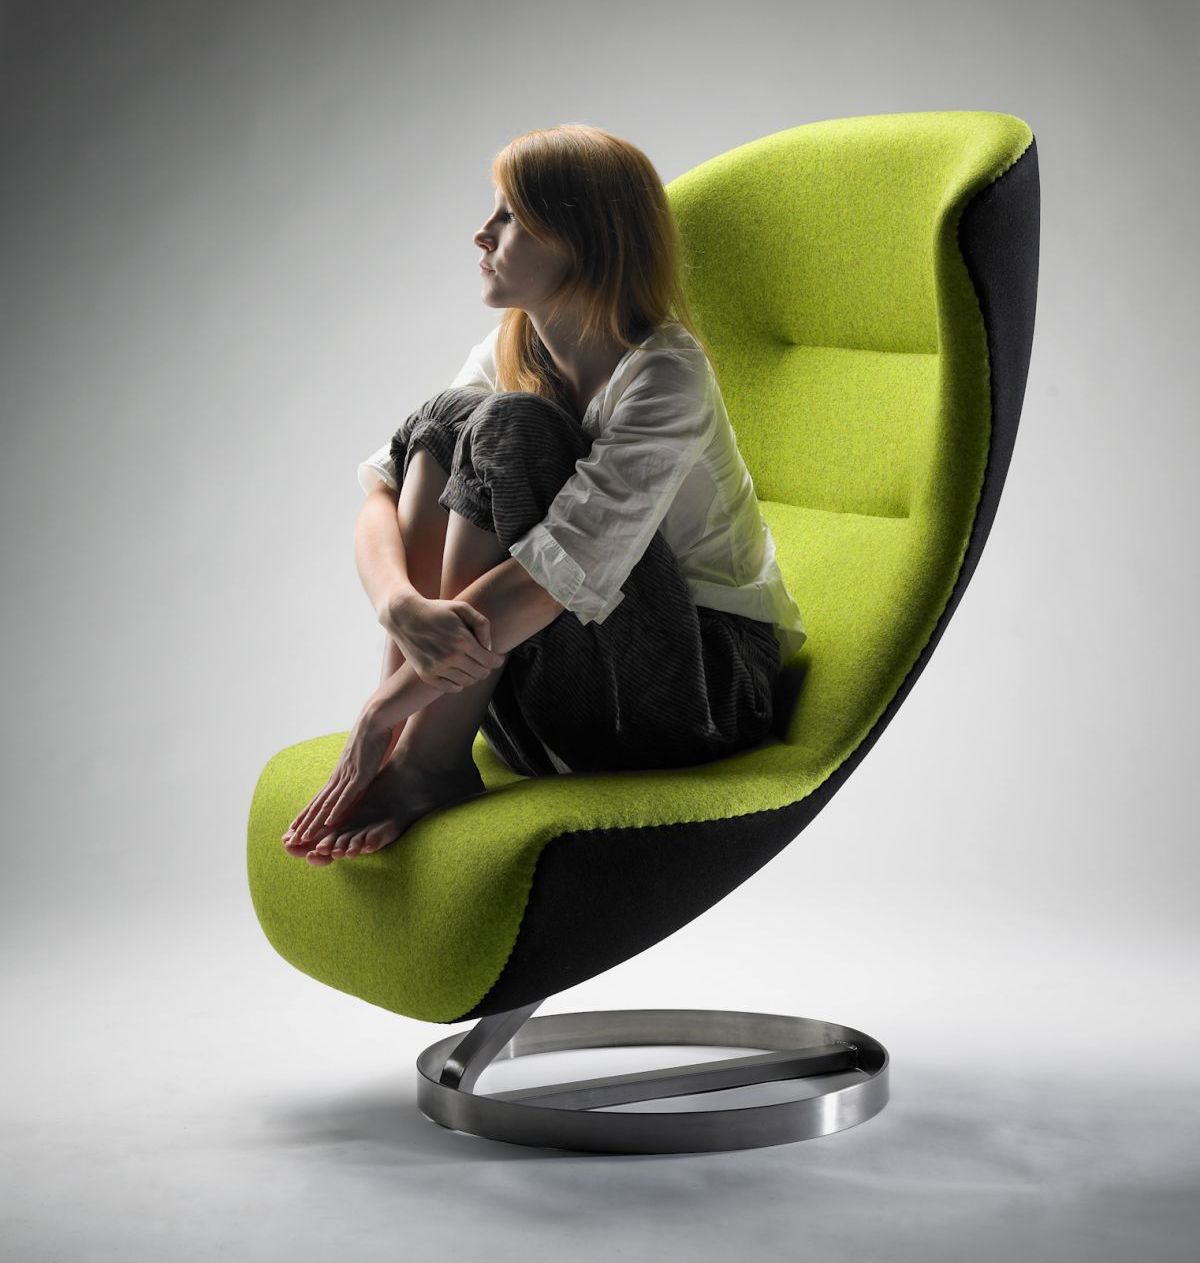 Необычное дизайнерское кресло